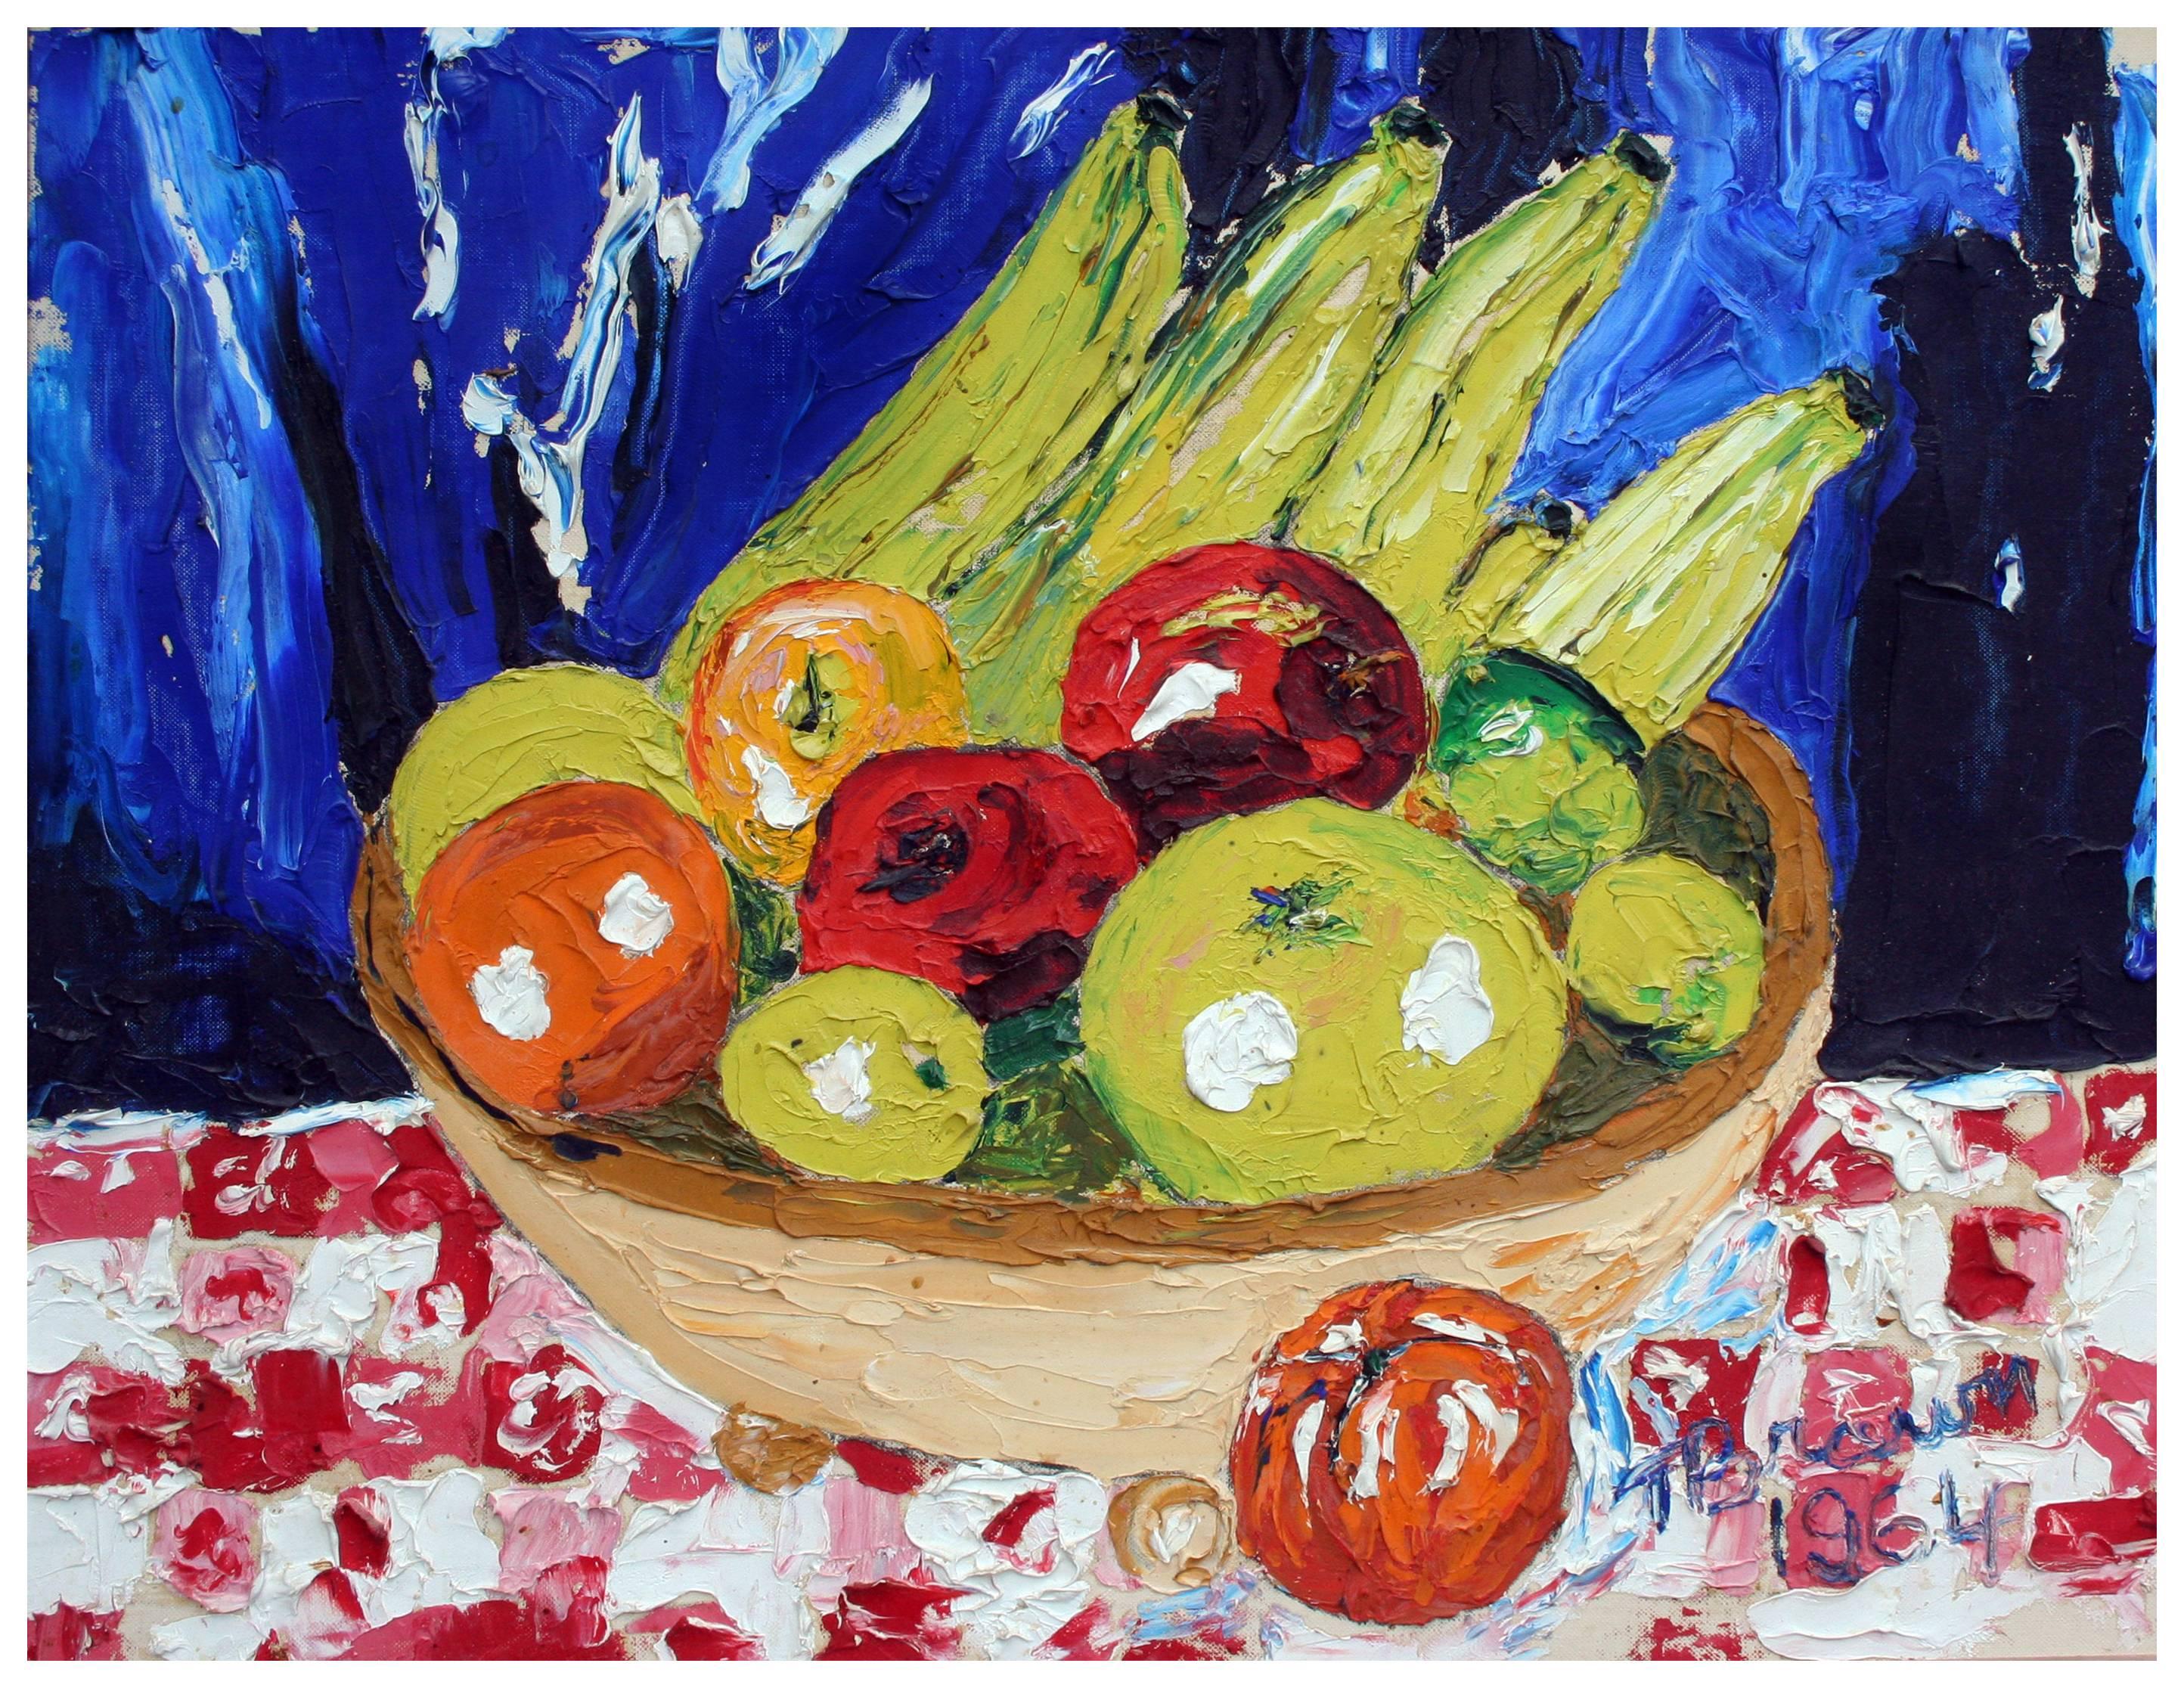 Panier fauviste de fruits moderne du milieu du siècle - Nature morte aux couleurs primaires - Painting de T. Brown